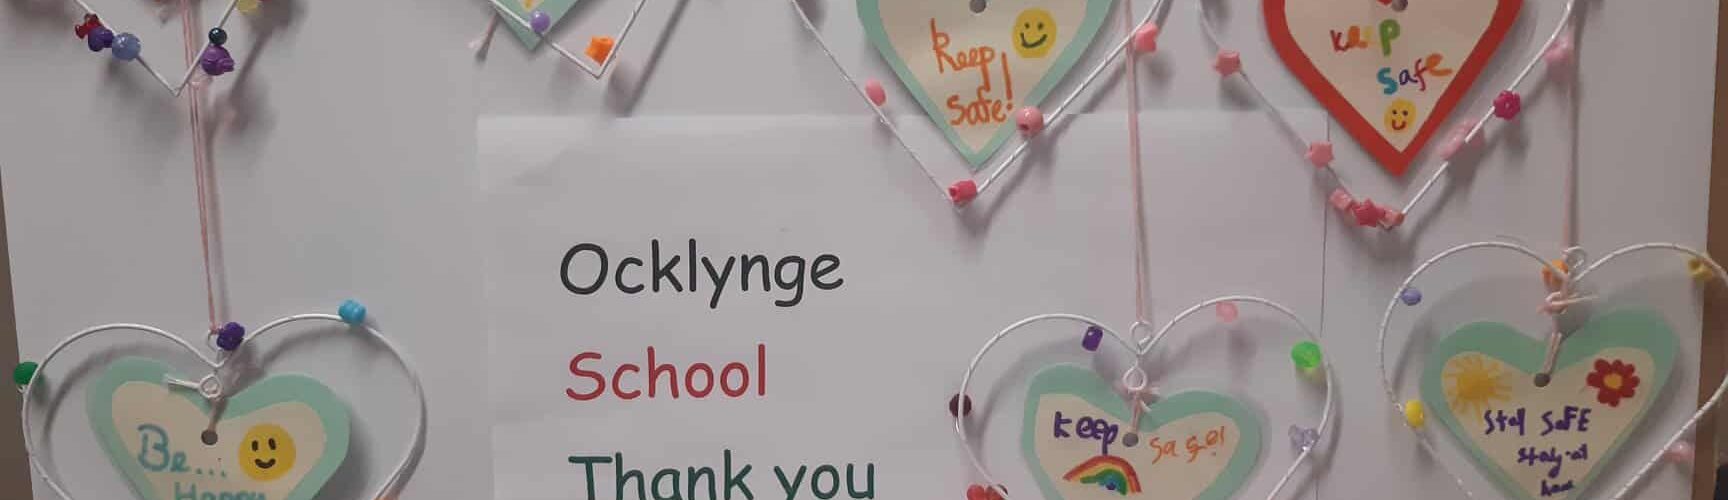 Ocklynge School hearts display